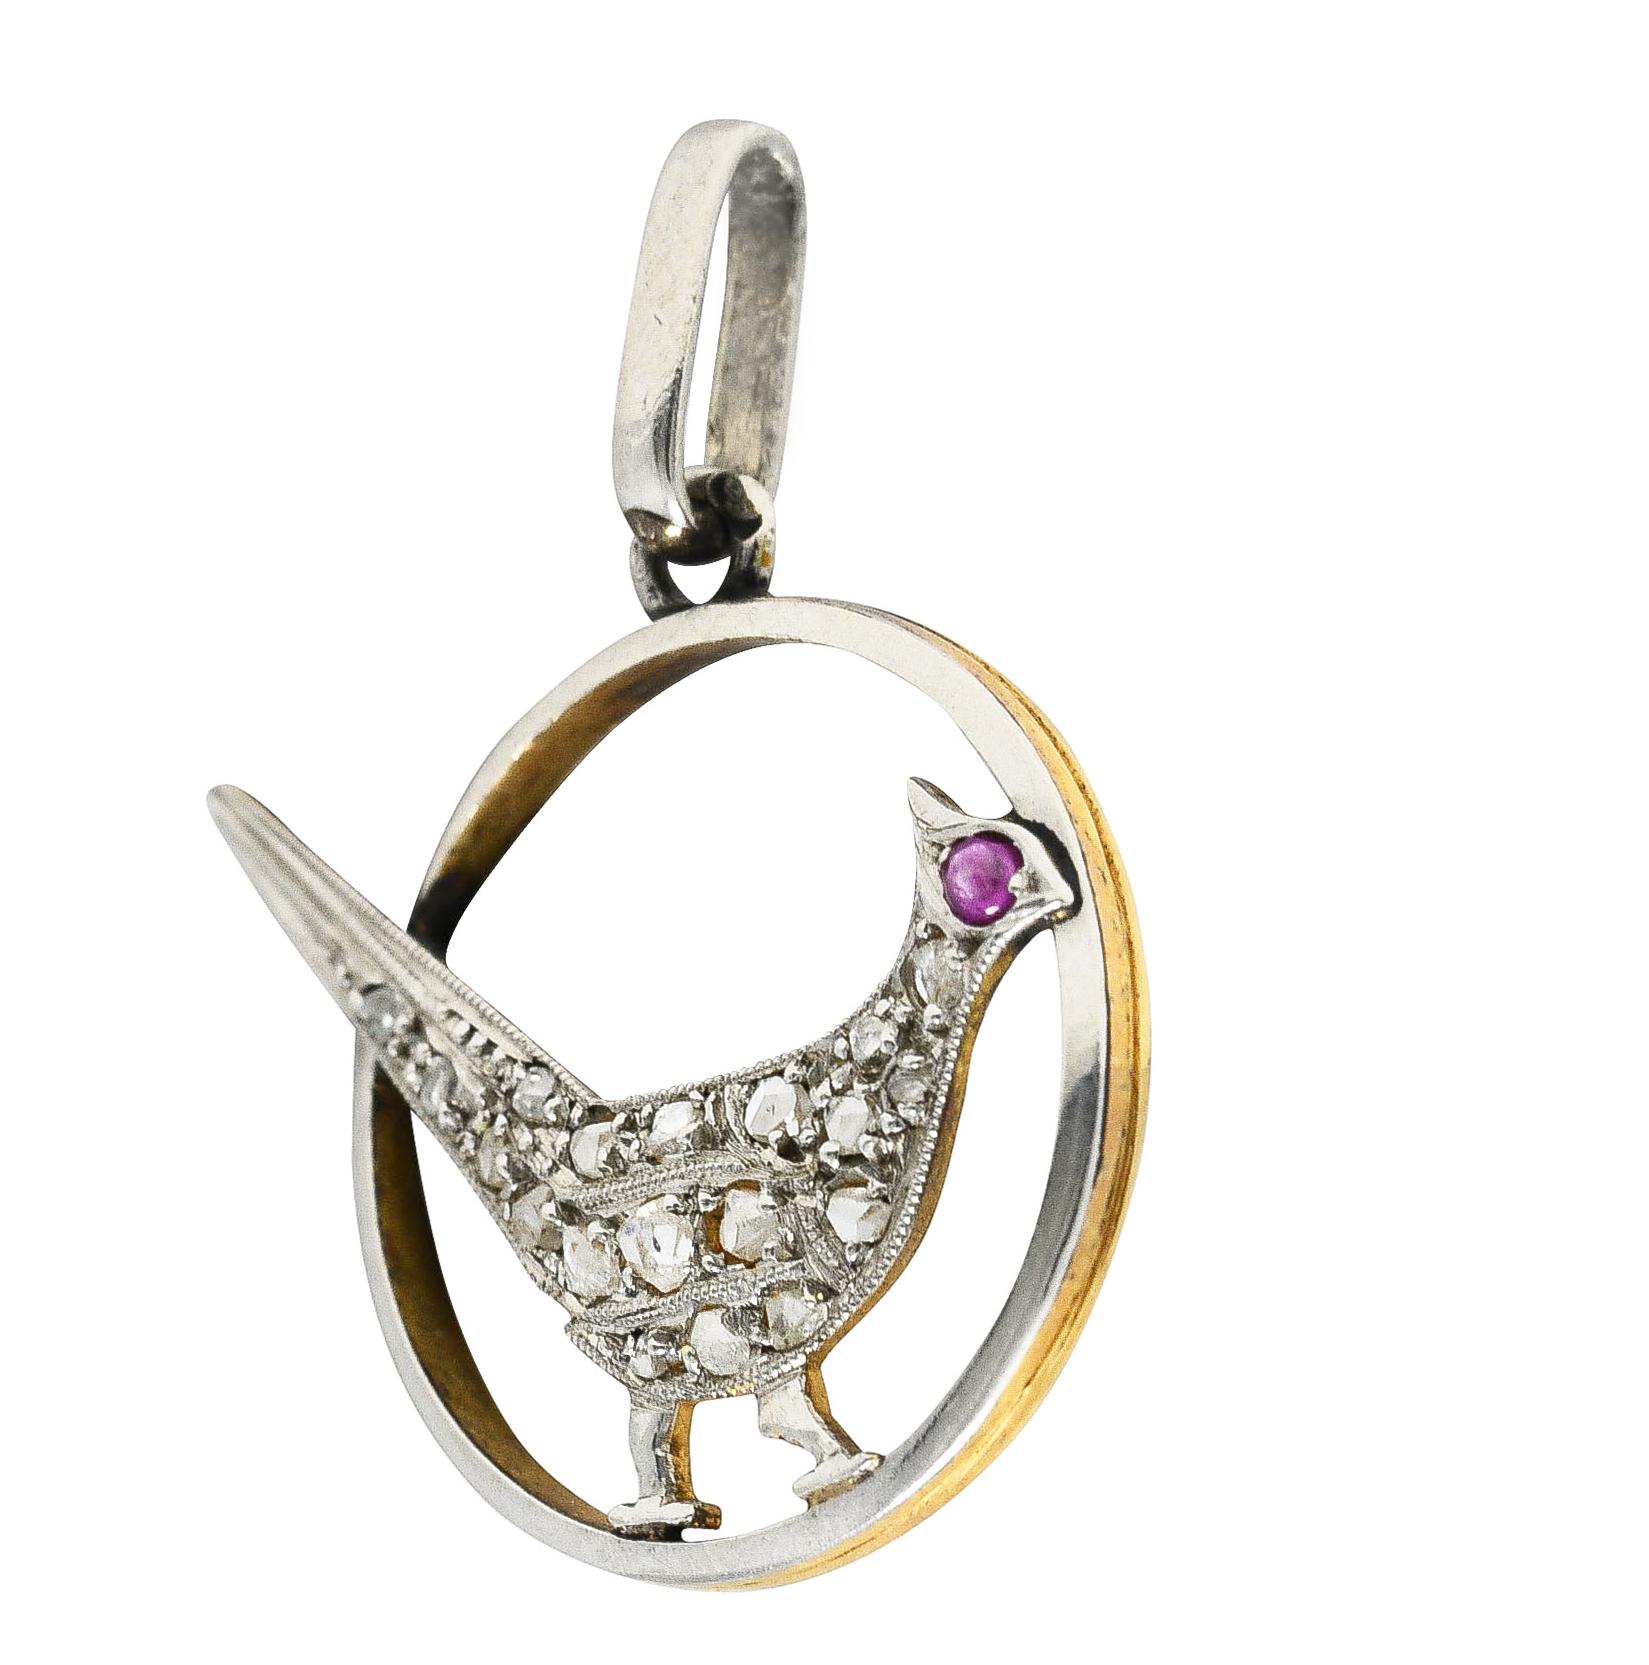 Entworfen in Form eines sitzenden Vogels in einem kreisförmigen Rahmen. Perlenbesatz mit Diamanten im Rosenschliff.
Das Gesamtgewicht beträgt etwa 0,30 Karat. Die Qualität entspricht dem Schnitt und dem Alter. Akzentuiert durch ein